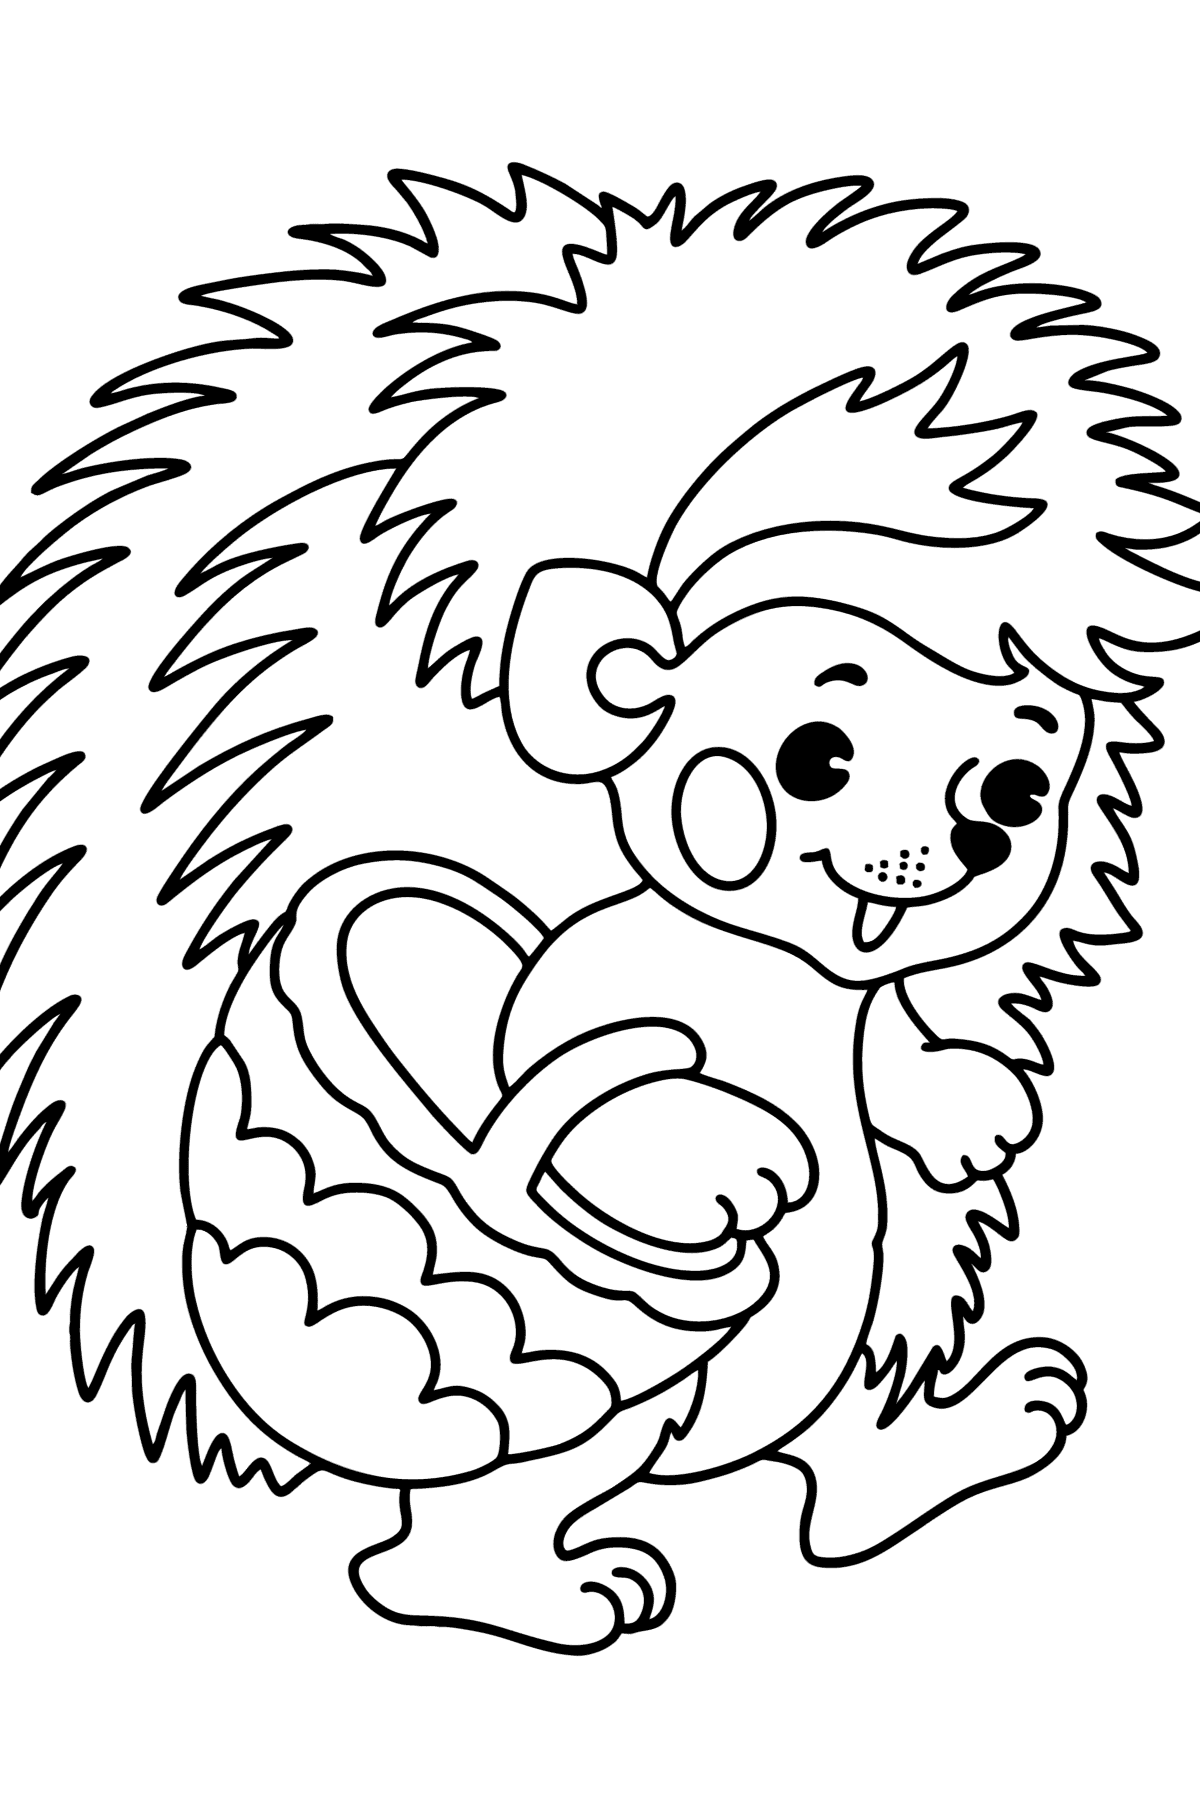 Tegning til fargelegging Lite pinnsvin - Tegninger til fargelegging for barn